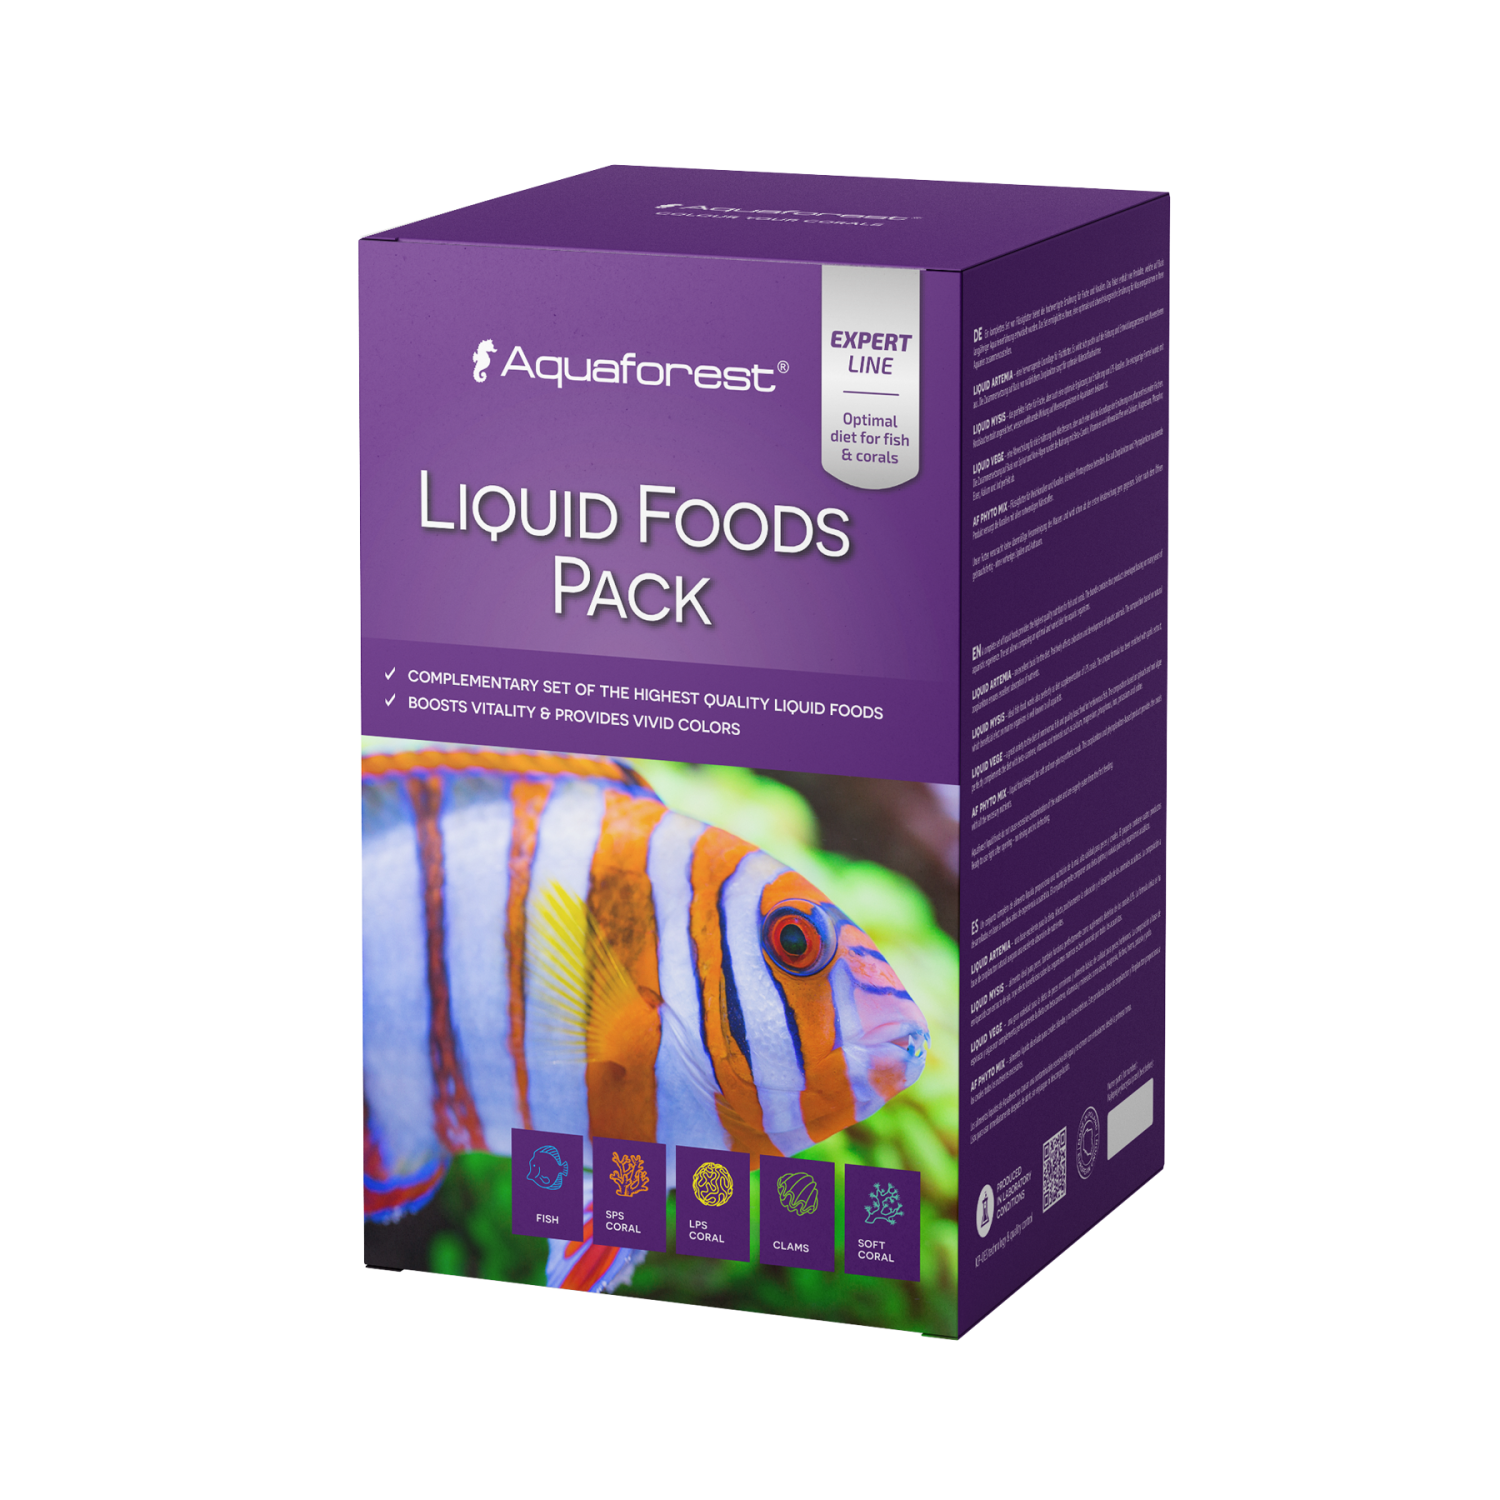 Liquid Foods Pack